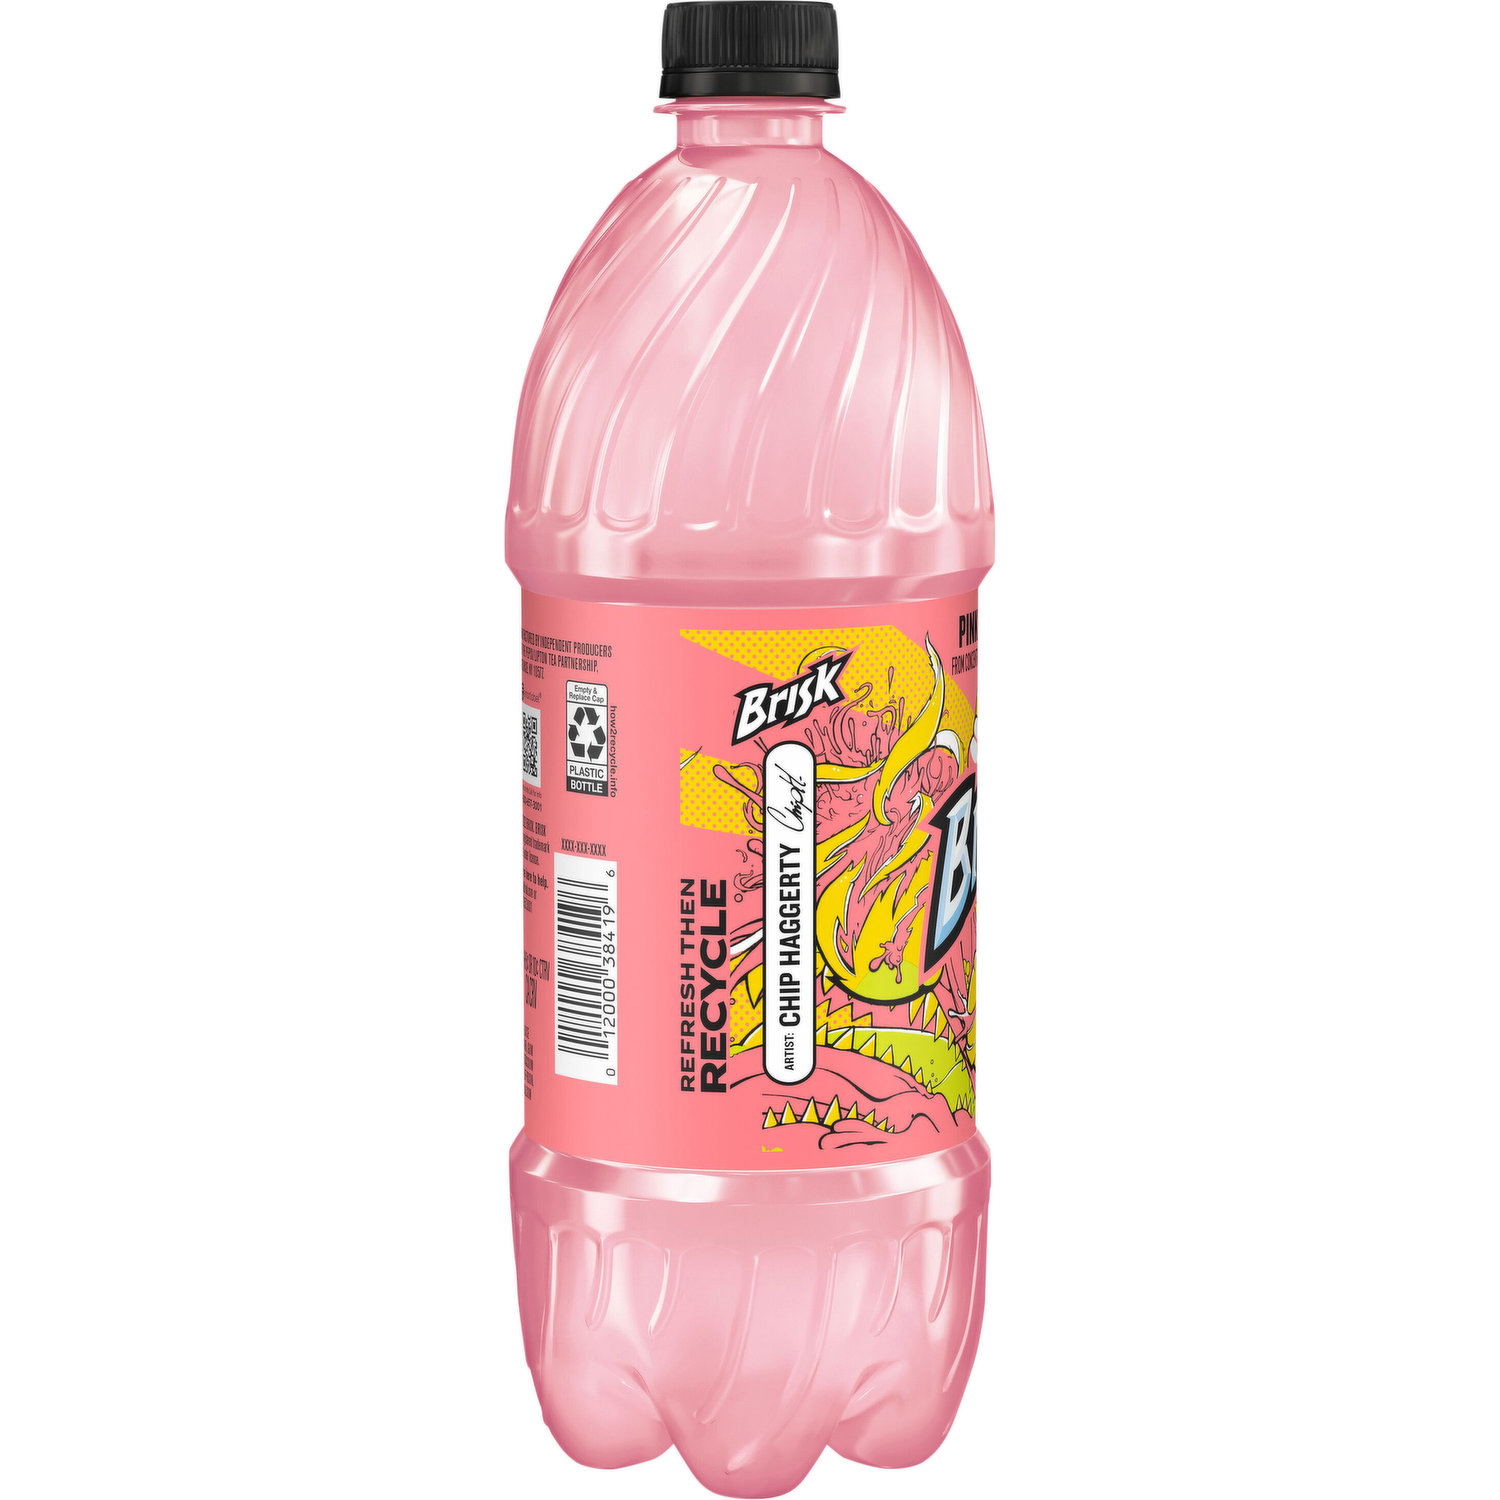 Brisk Pink Lemonade Juice Drink 20 fl oz Bottles – 24 Pack